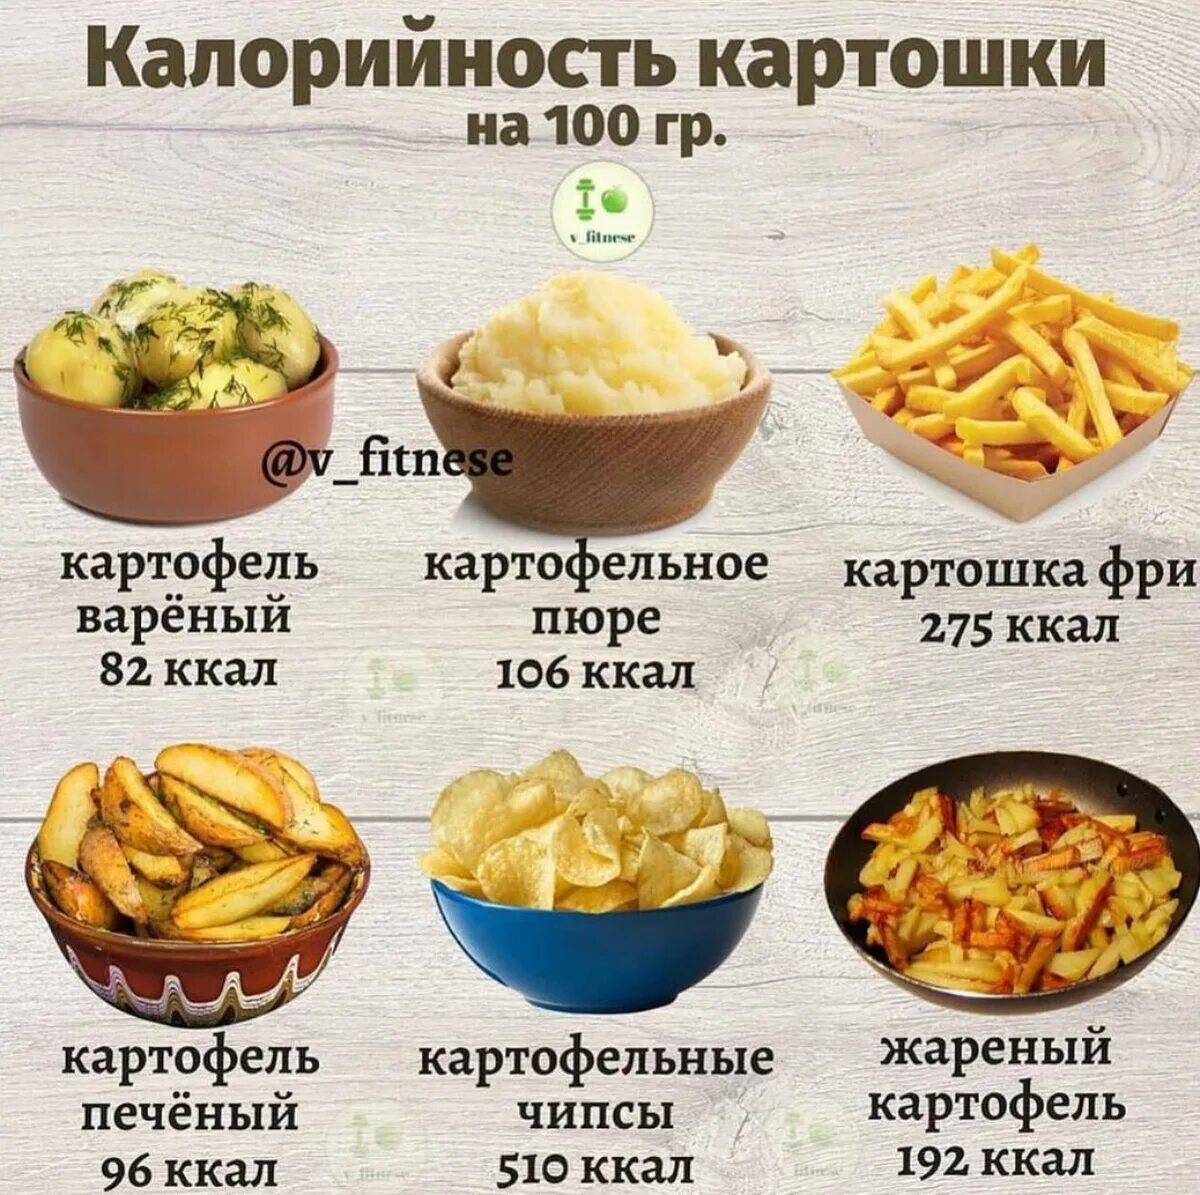 Сколько есть картошкой. Калорийность картошки. Жареная картошка калории. Картофель жареный калорийность. Картофель калорийность на 100 грамм.